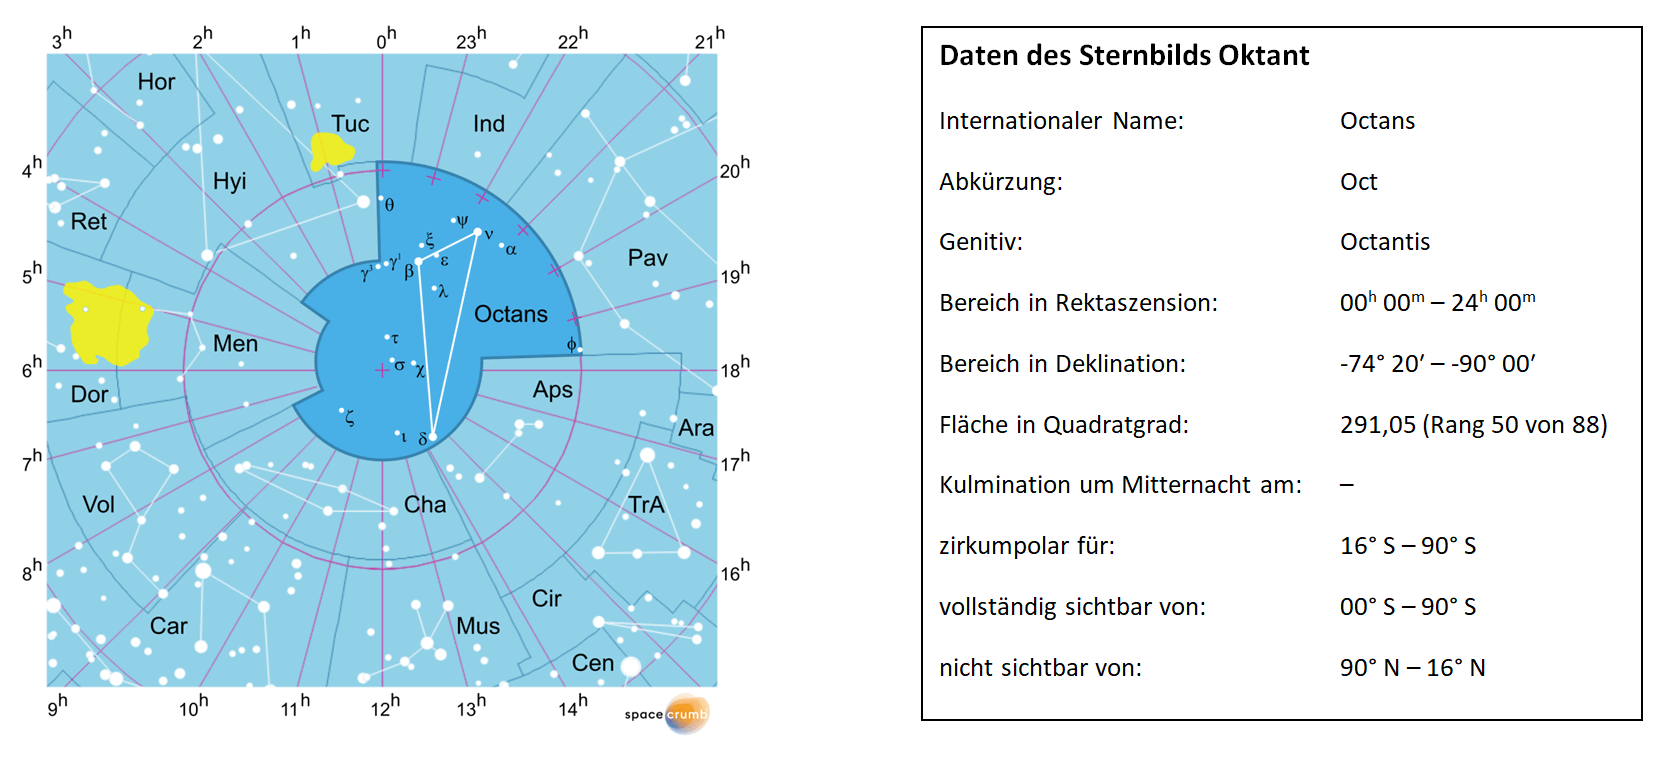 Links zeigt eine mit Koordinaten versehene Karte eines Himmelsausschnitts weiße Sterne auf hellblauem Hintergrund. Die Fläche, die das Sternbild Oktant einnimmt, ist dunkelblau hervorgehoben. Eine Tabelle rechts gibt wichtige Daten des Sternbilds Oktant an.